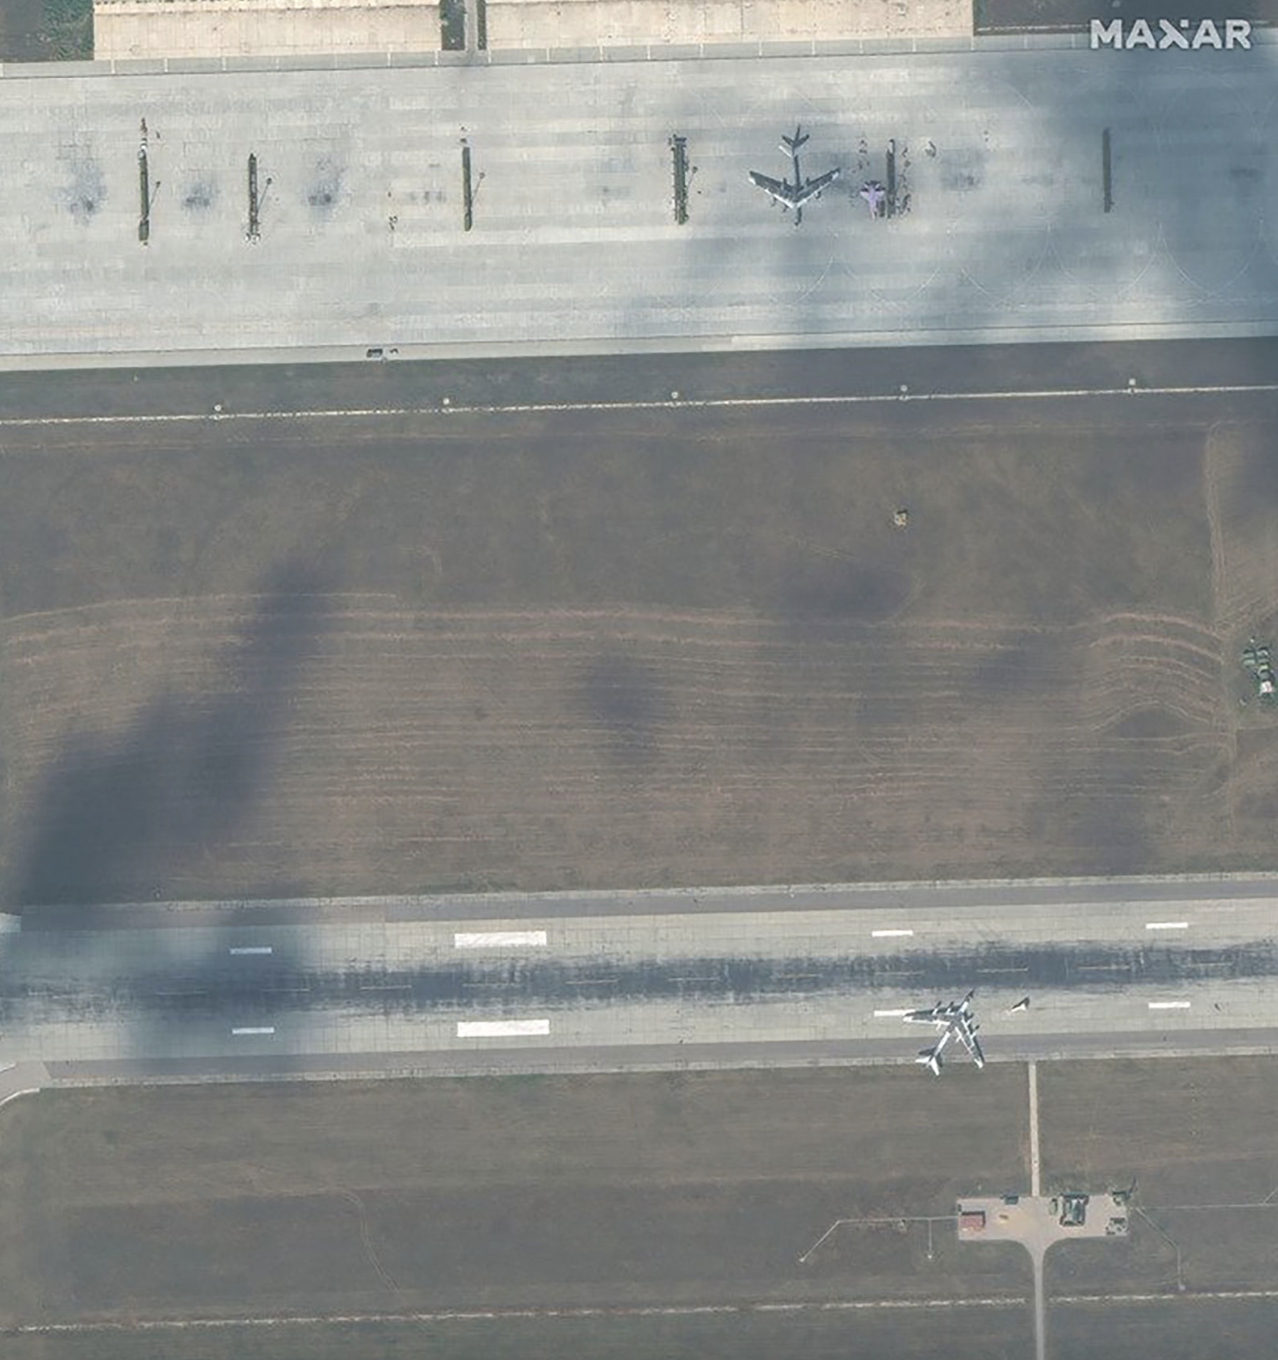 "Це виглядає безглуздо": західні експерти прокоментували "маскування" російських літаків за допомогою шин. Фото